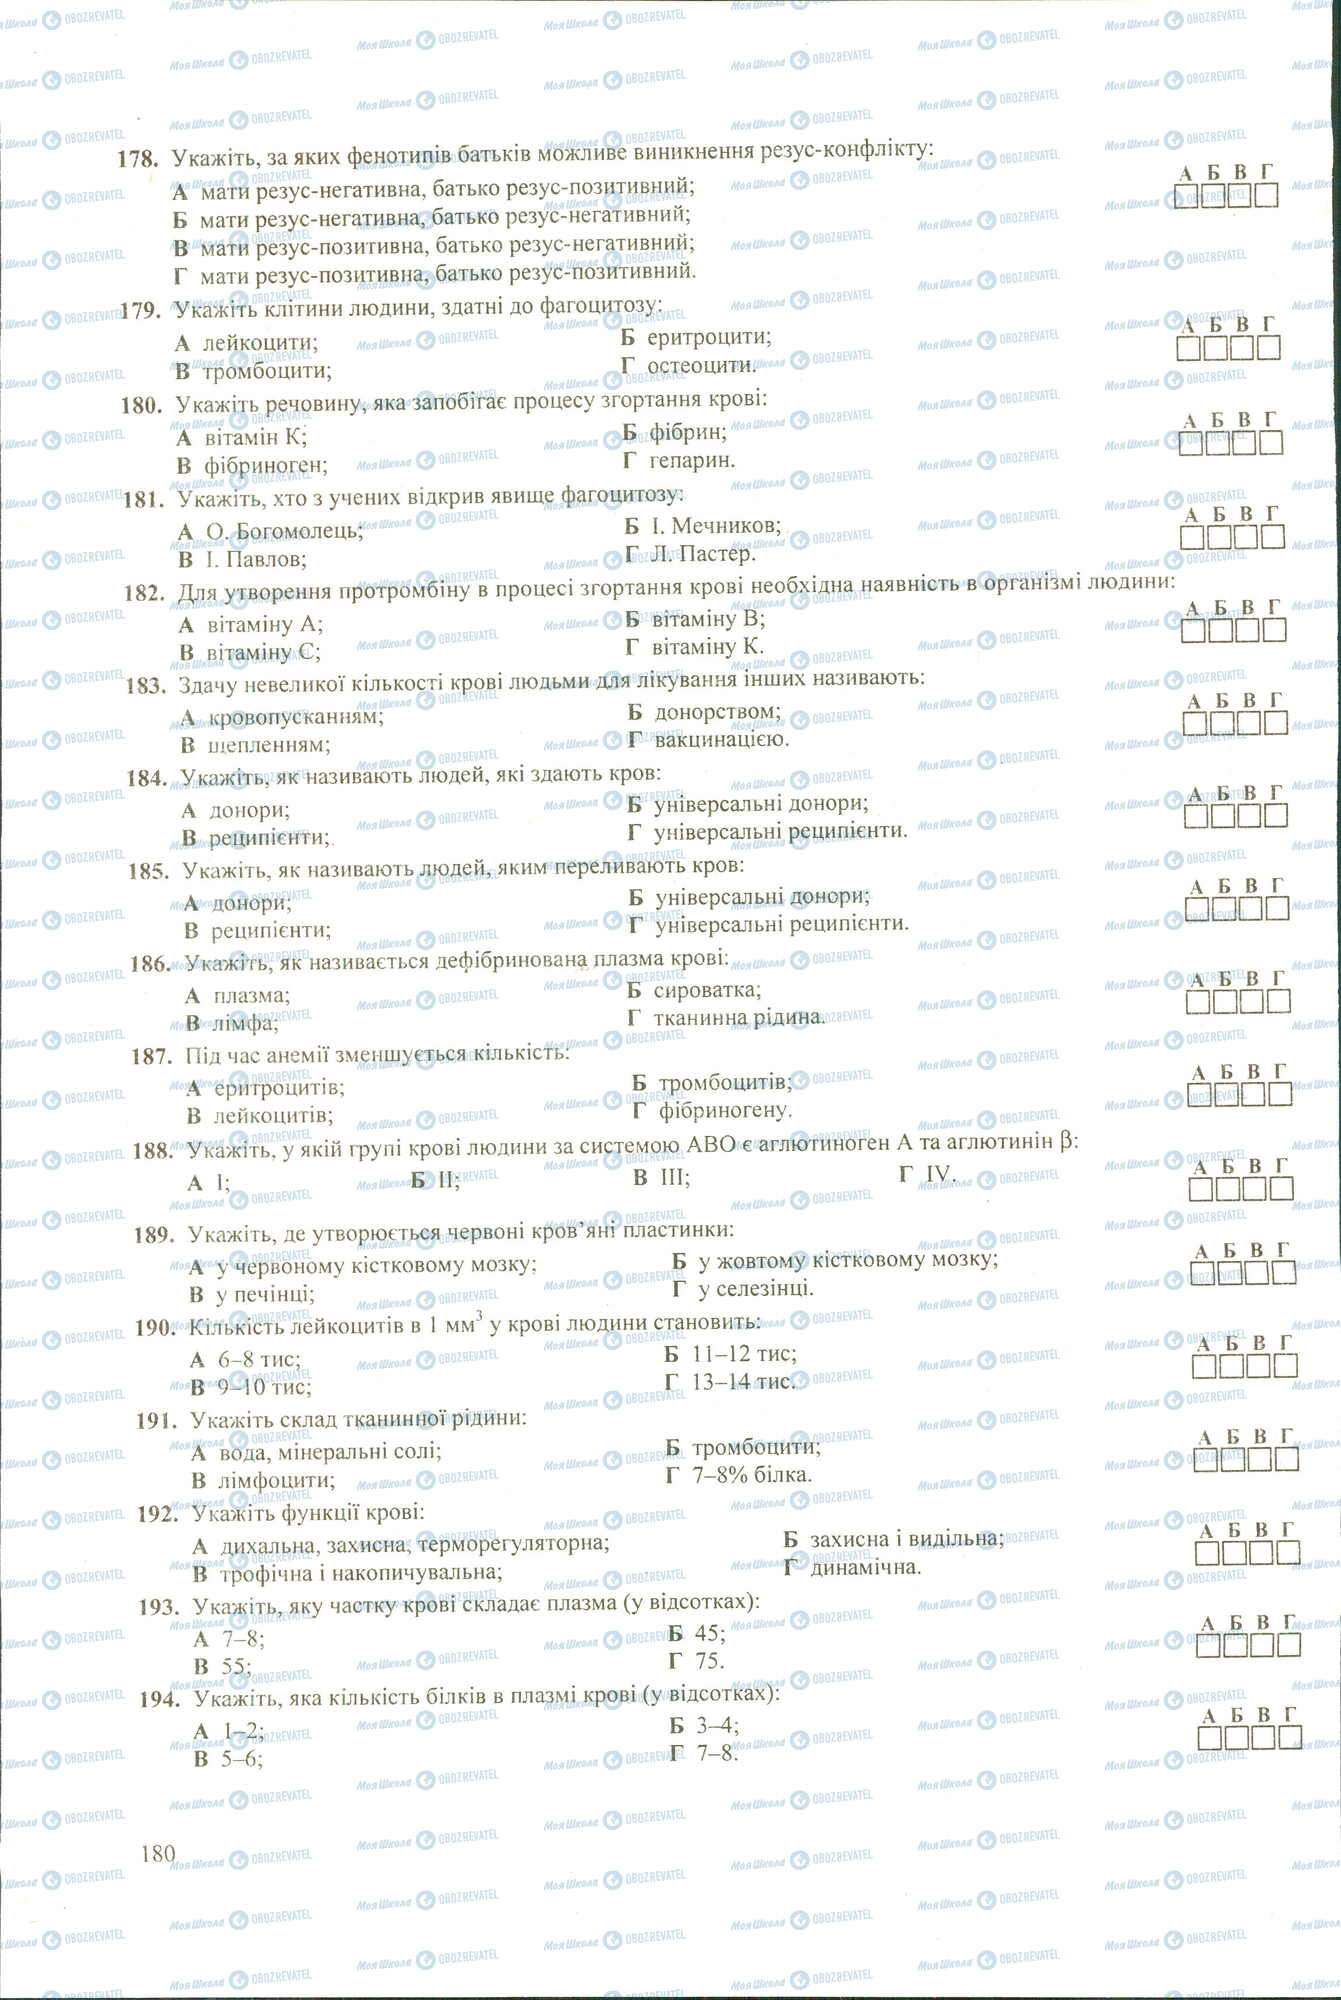 ЗНО Биология 11 класс страница 178-194